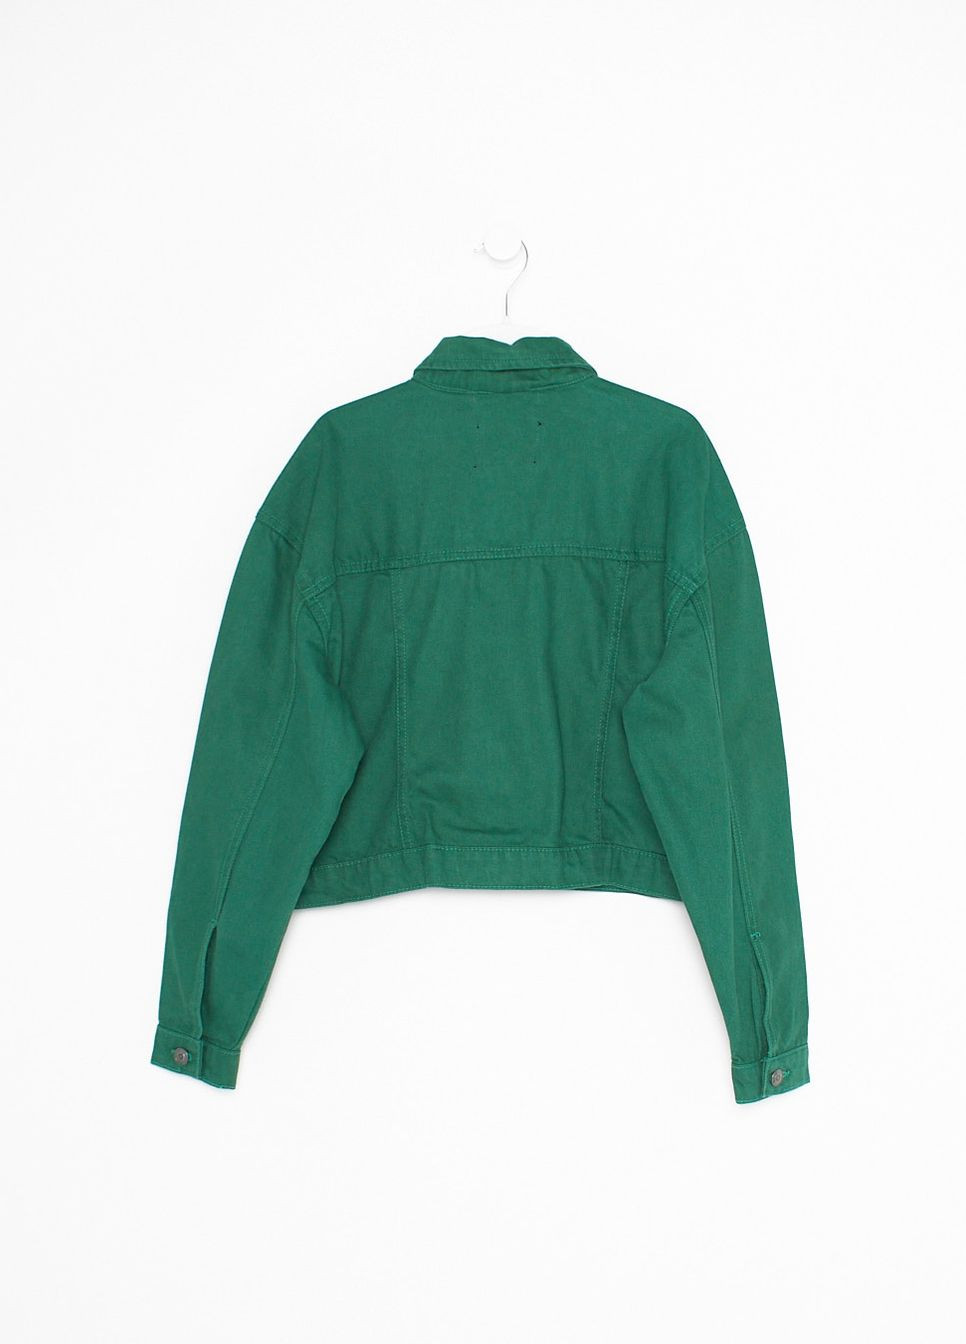 Зелена джинсова куртка,зелений, Brave Soul